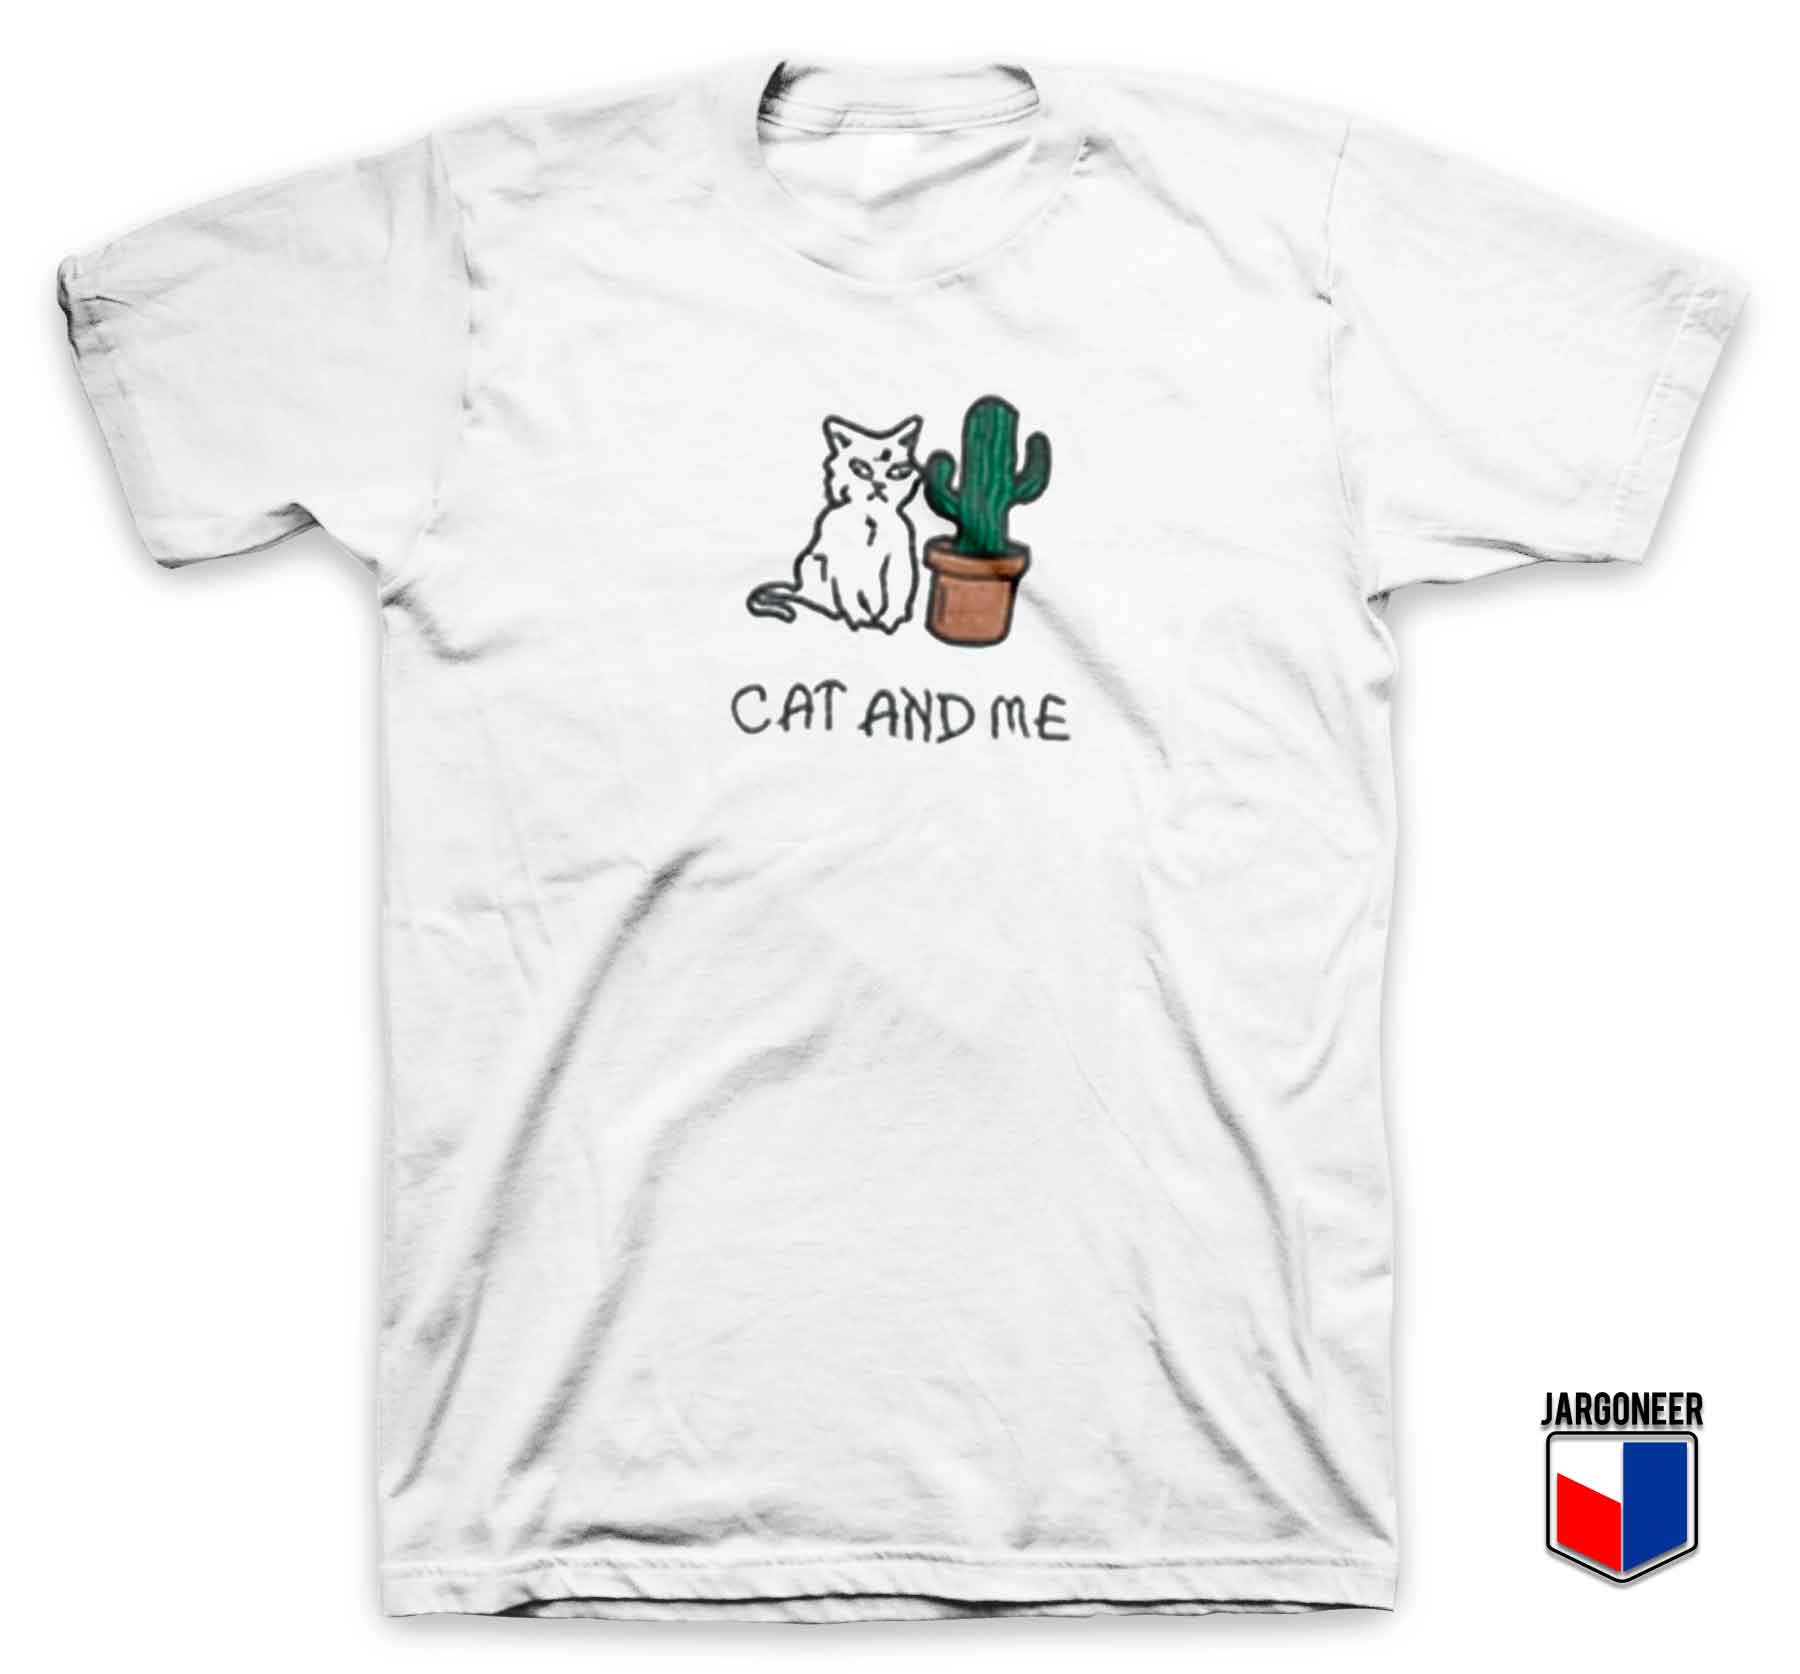 Cat And Me - Shop Unique Graphic Cool Shirt Designs